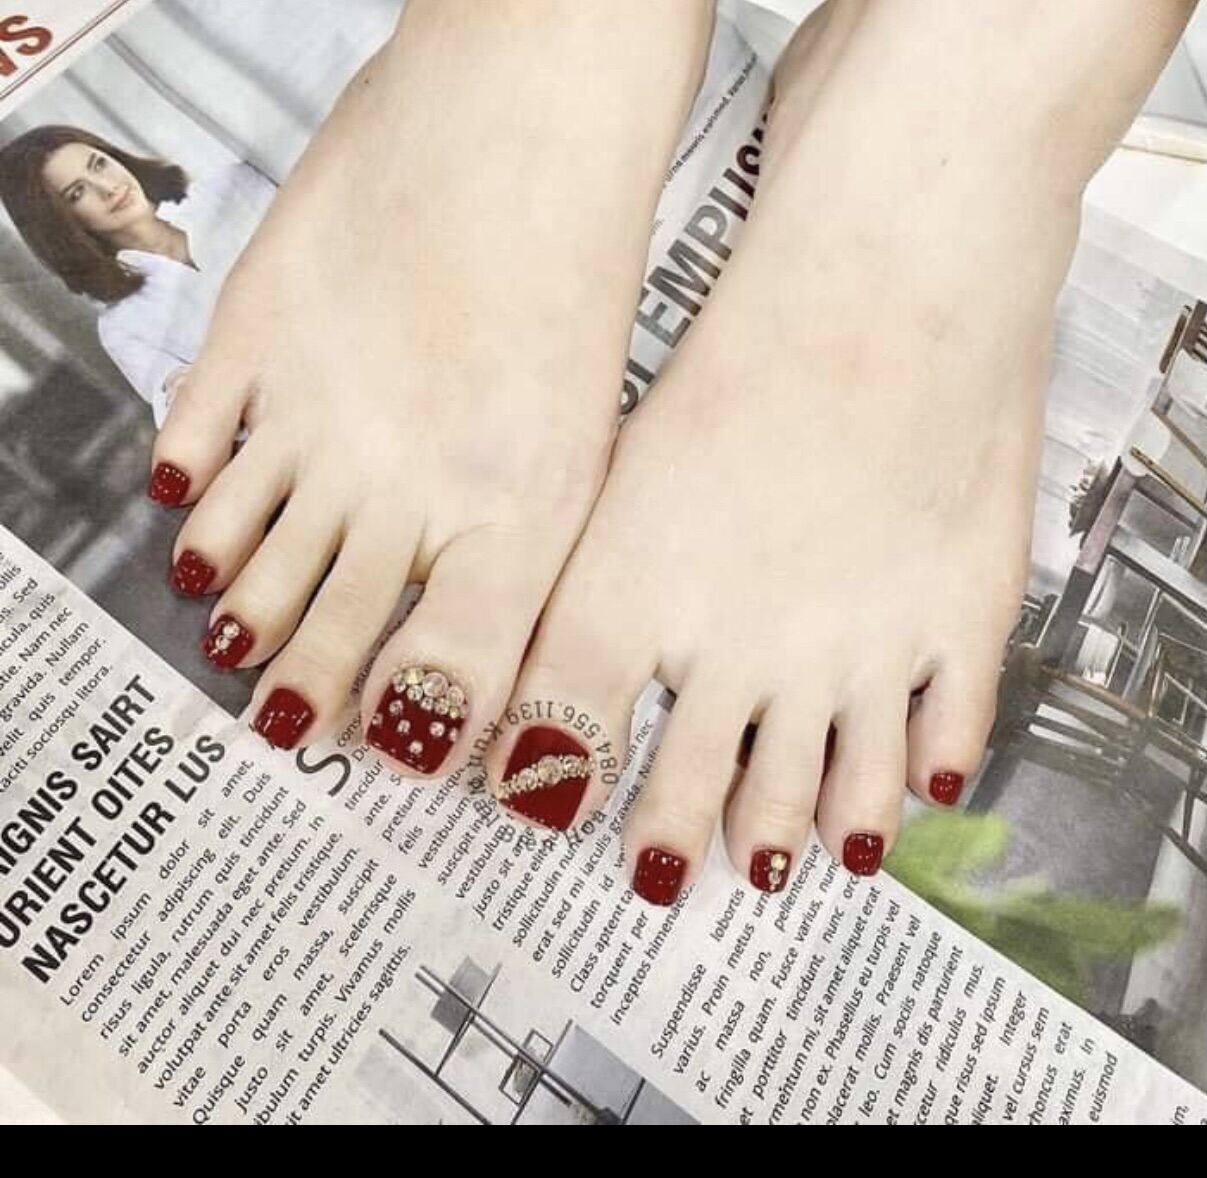 Chi tiết với hơn 89 sơn móng chân màu đỏ cherry tuyệt vời nhất  Tin học  Đông Hòa